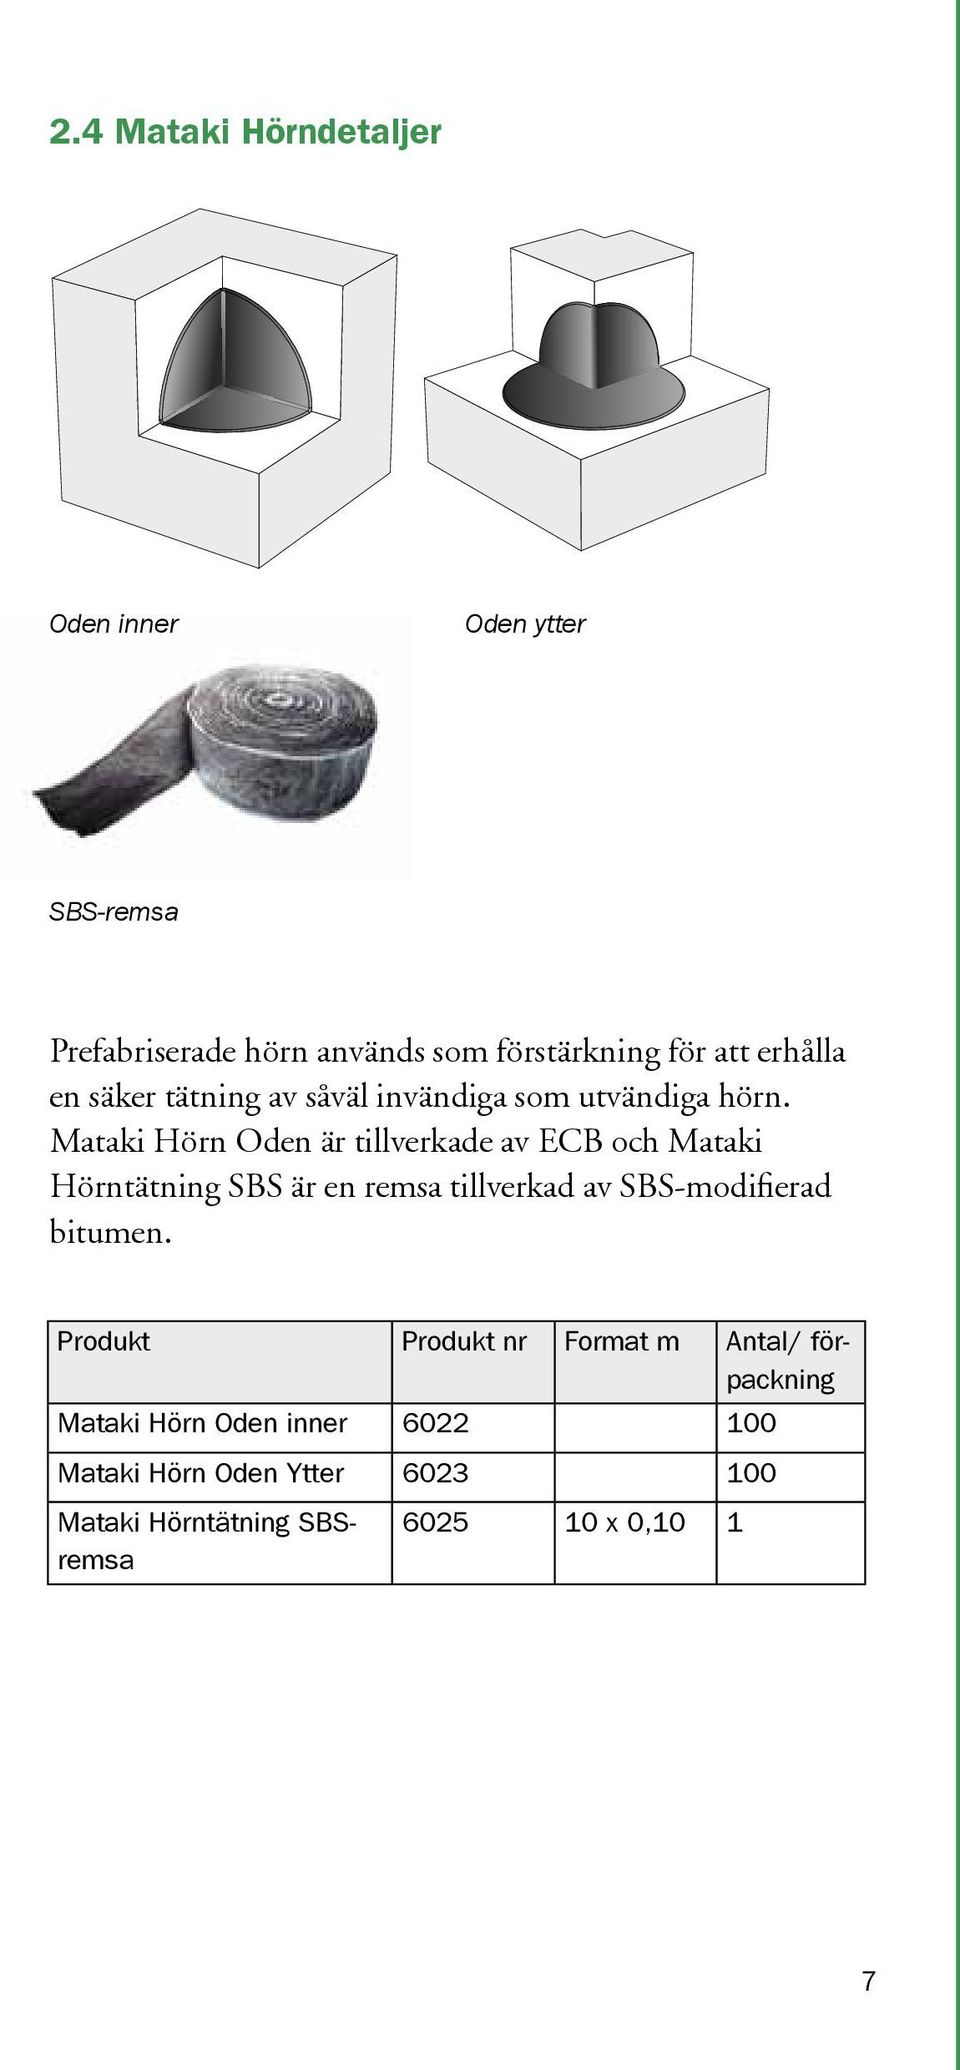 Mataki Hörn Oden är tillverkade av ECB och Mataki Hörntätning SBS är en remsa tillverkad av SBS-modifierad